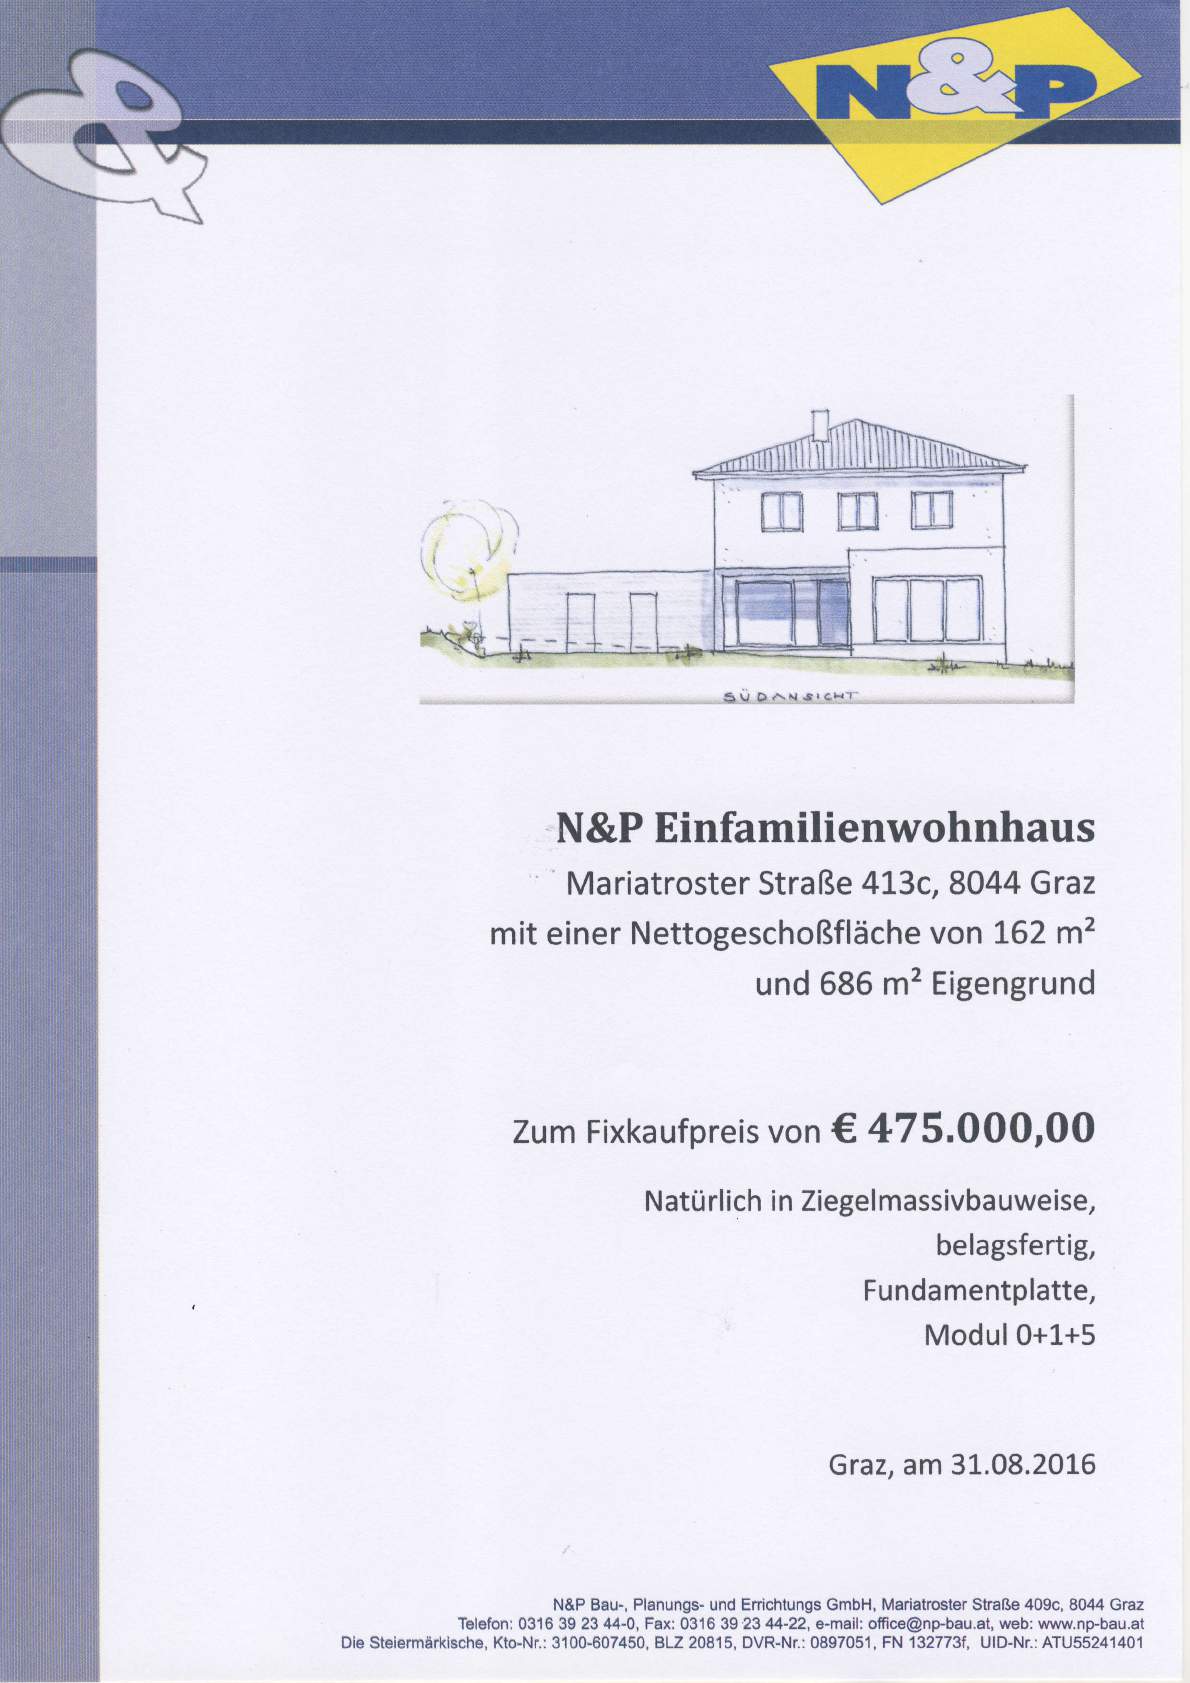 N&P Einfamilienwohnhaus Mariatroster Straße 4L3c, 8044 Graz mit einer Nettogeschoßfläche von t62 mz und 686 m2 Eigengrund Zum Fixkaufpreis von C 47 5.